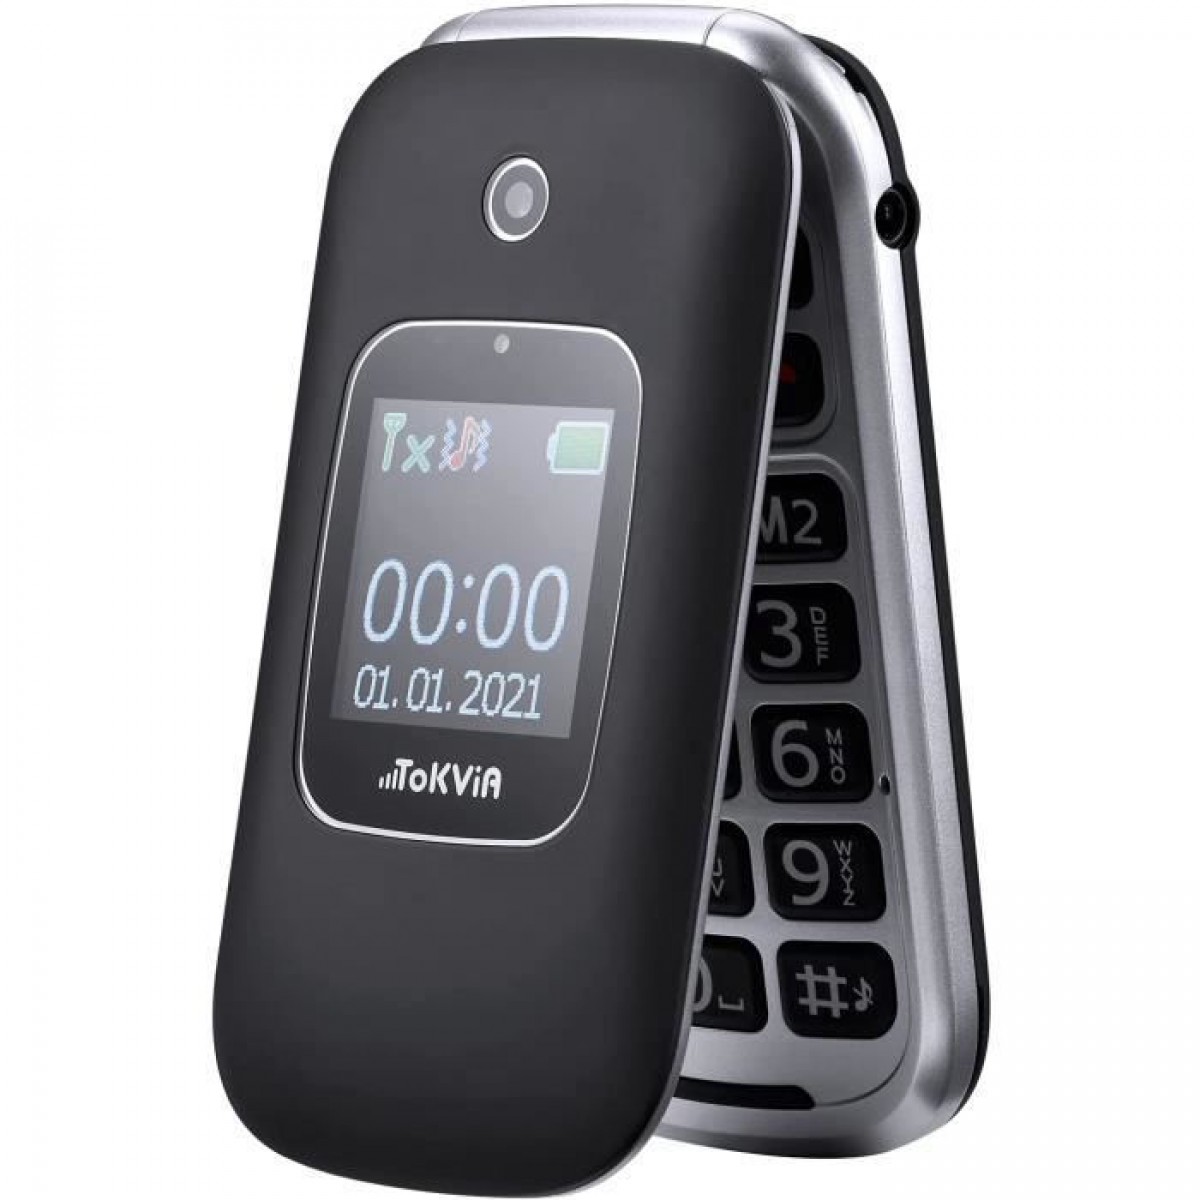 TOKVIA T221 MOBILE PHONE